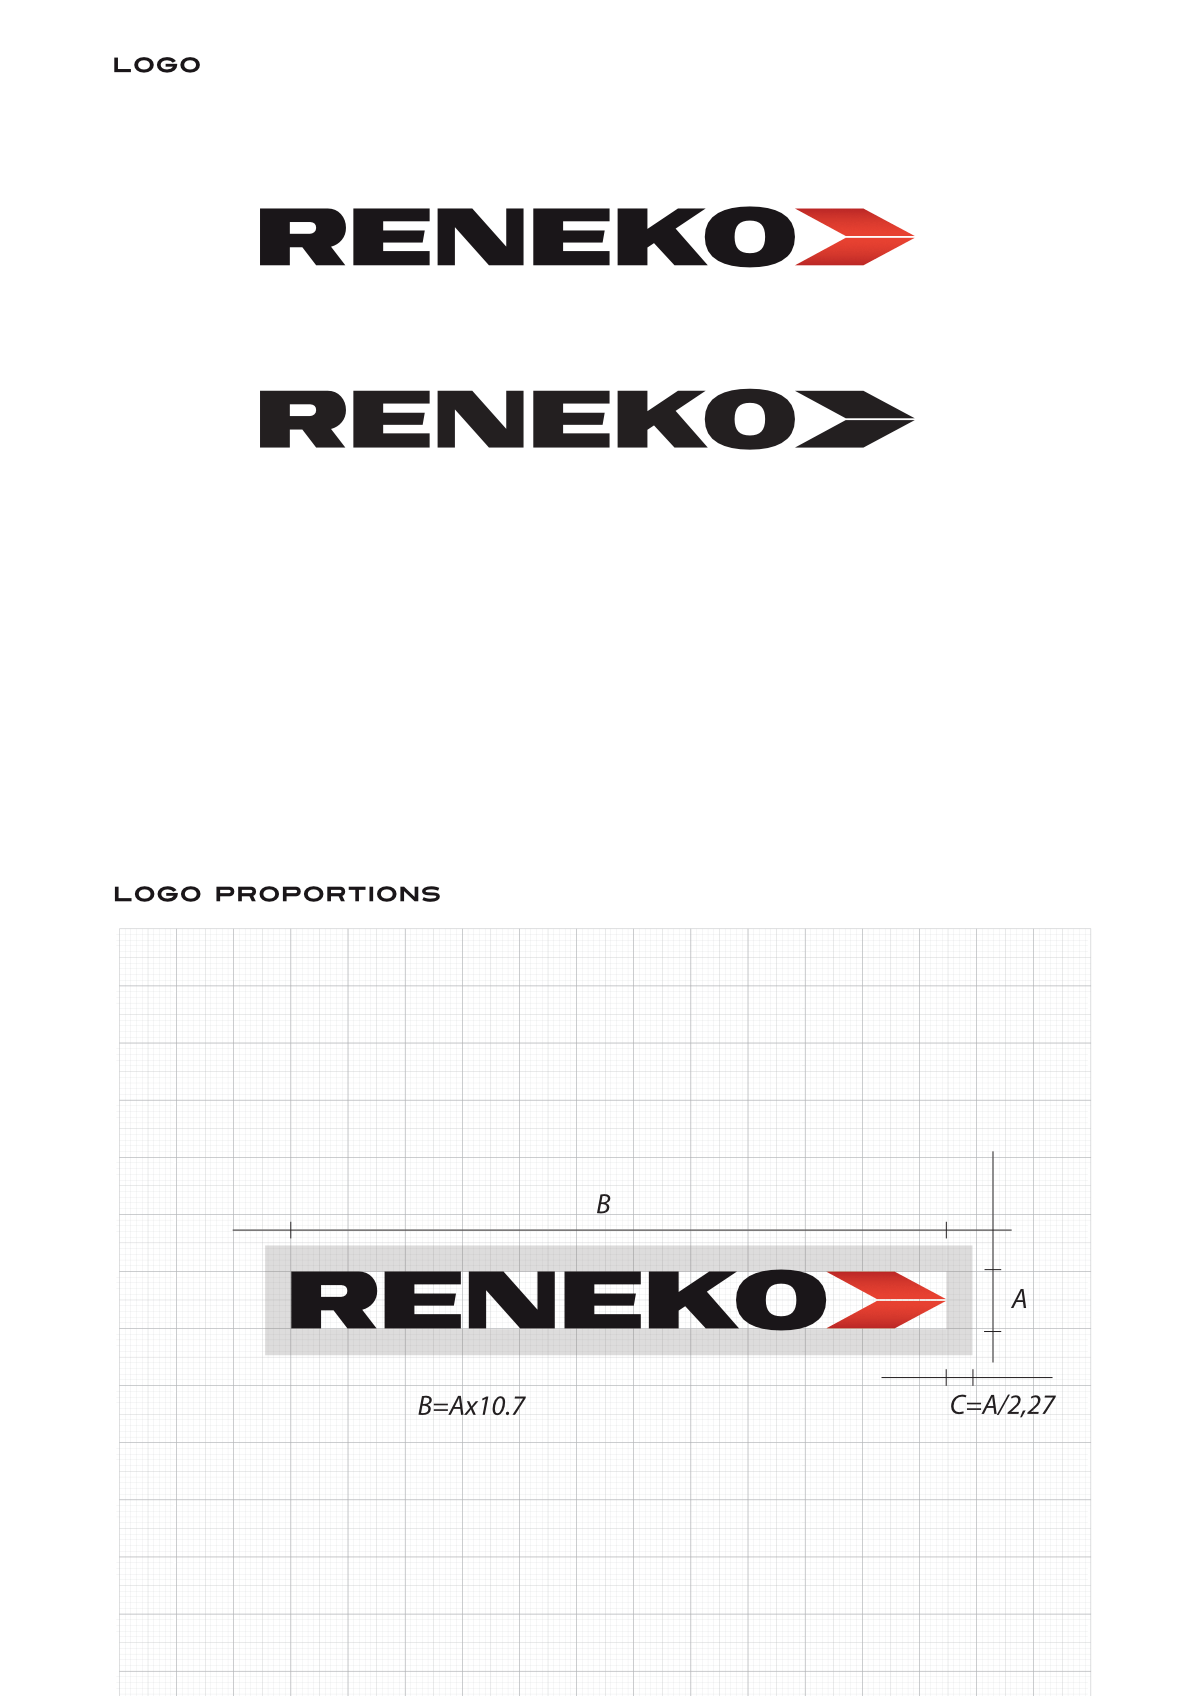 reneko rebranding logo disain big2 1